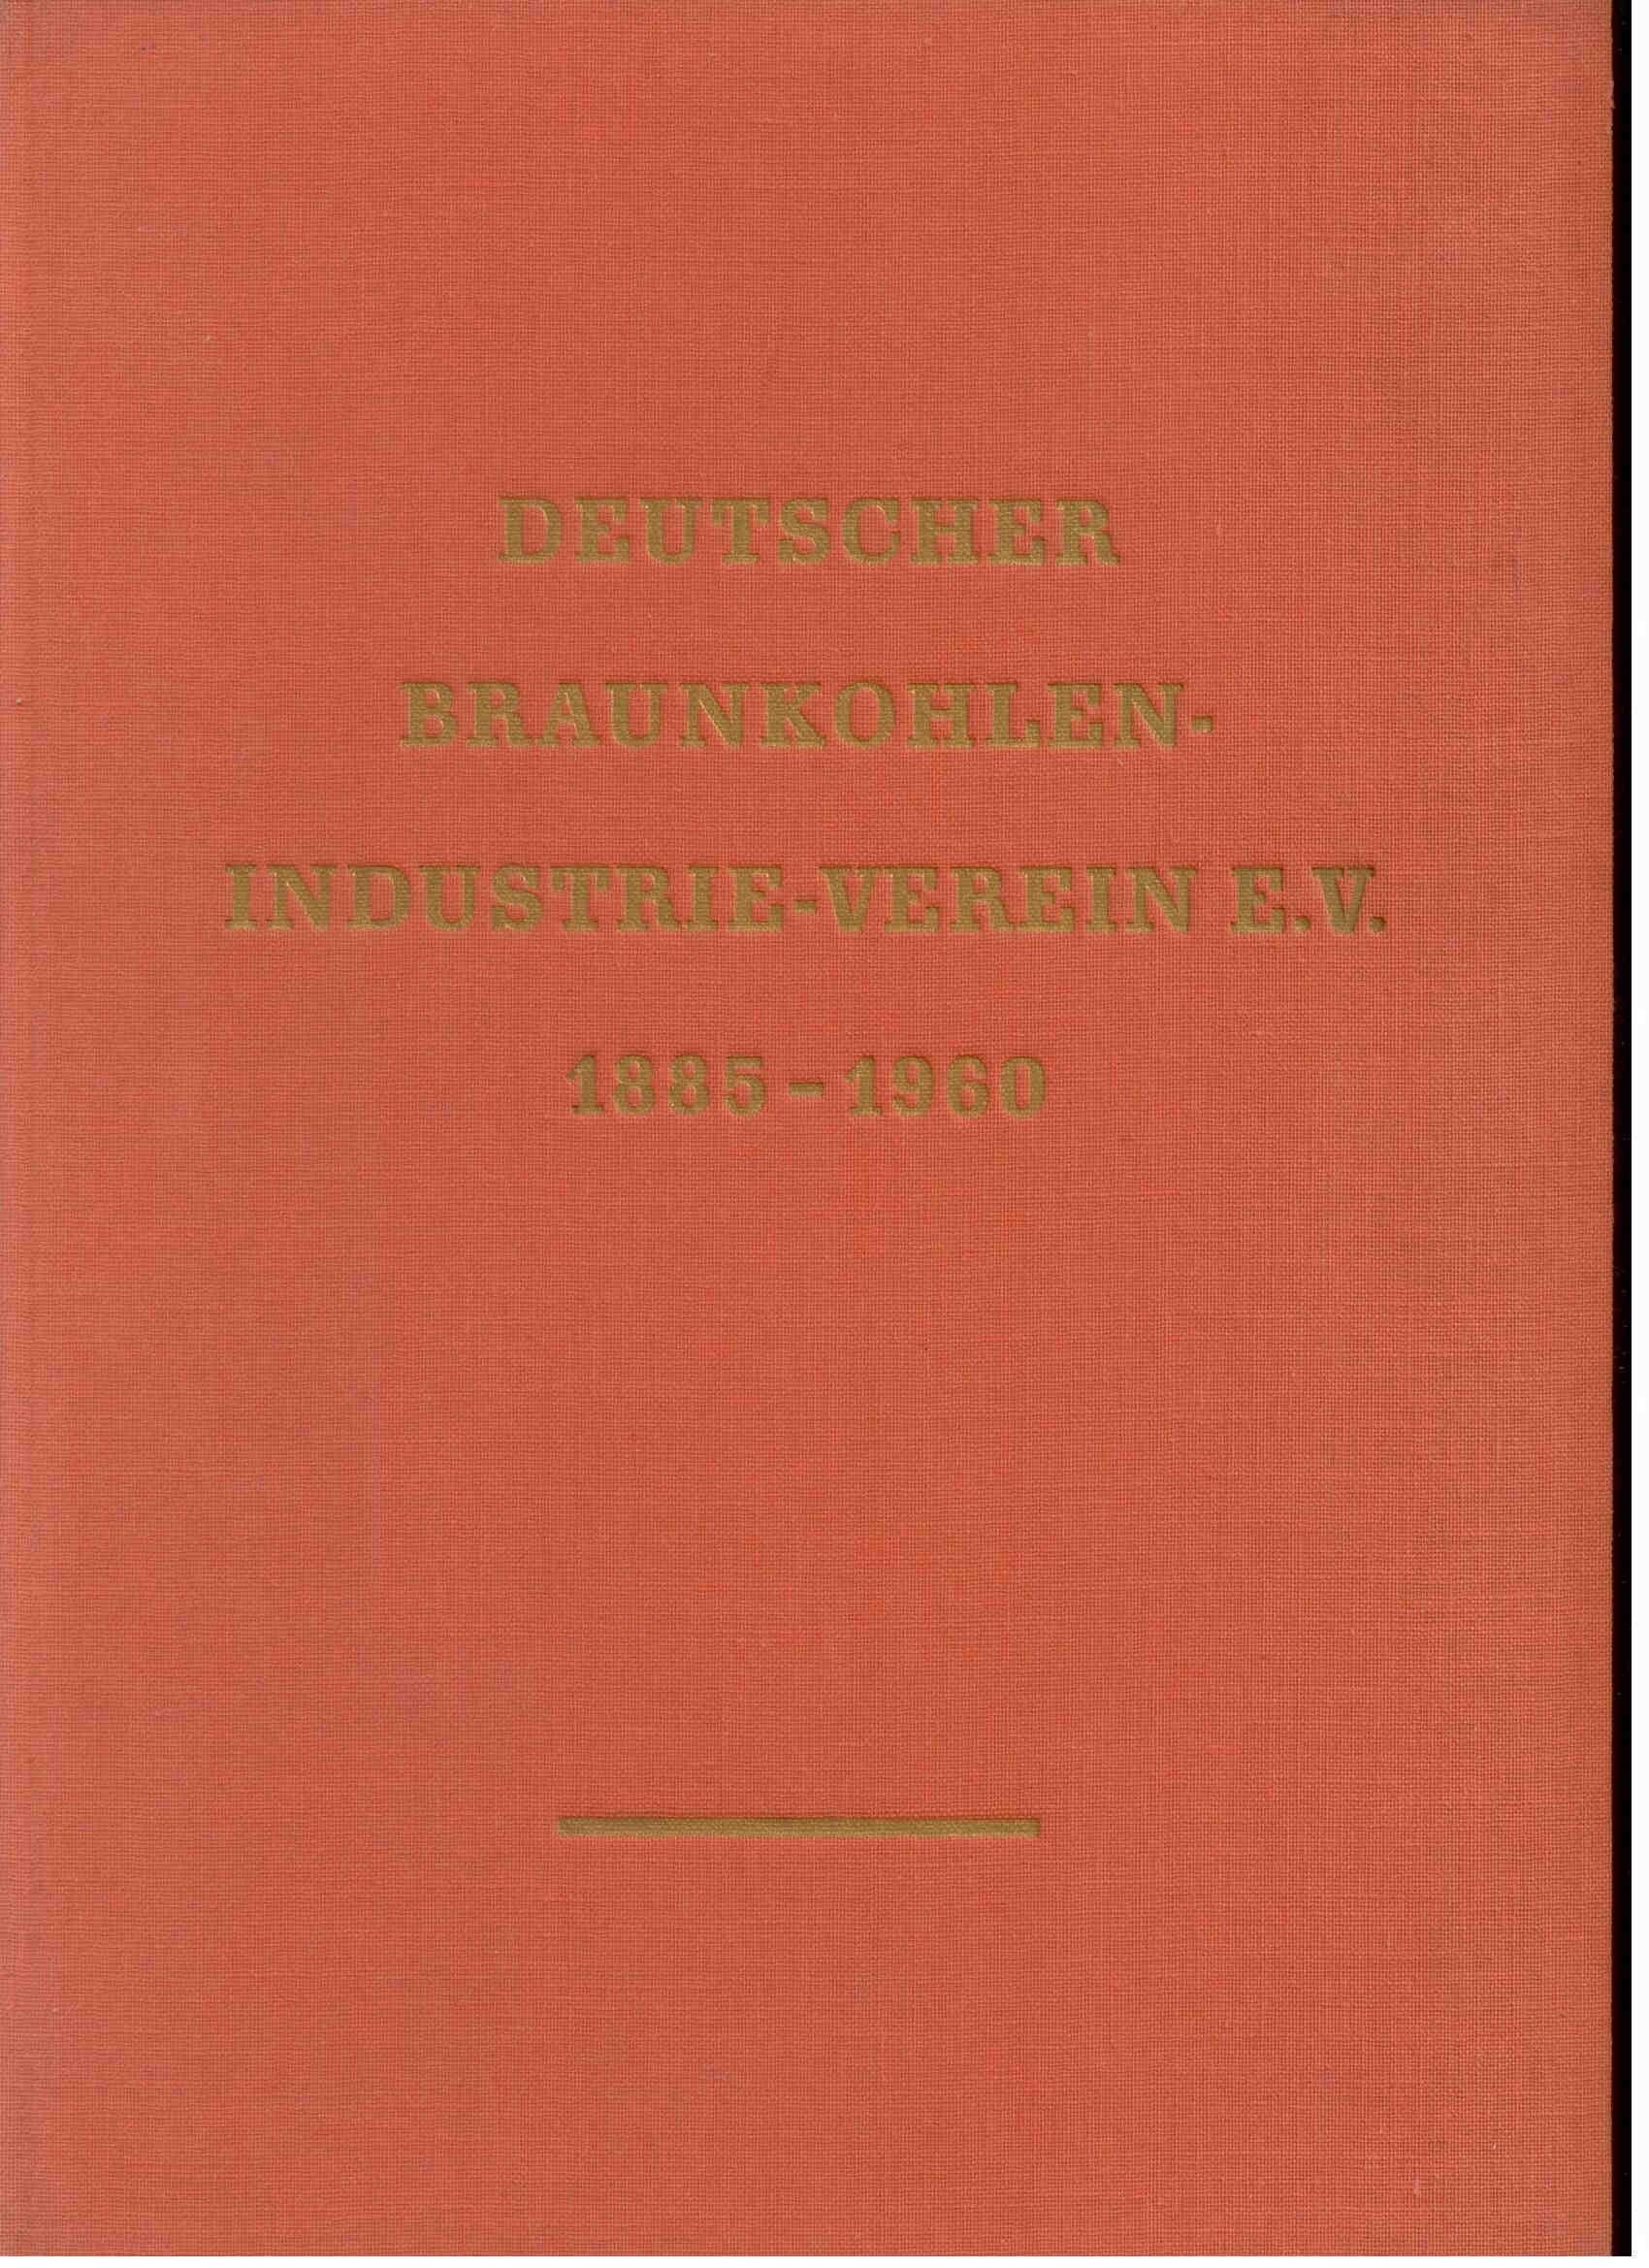 Deutscher Braunkohlen-Industrie-Verein e. V ; 1885 - 1960.